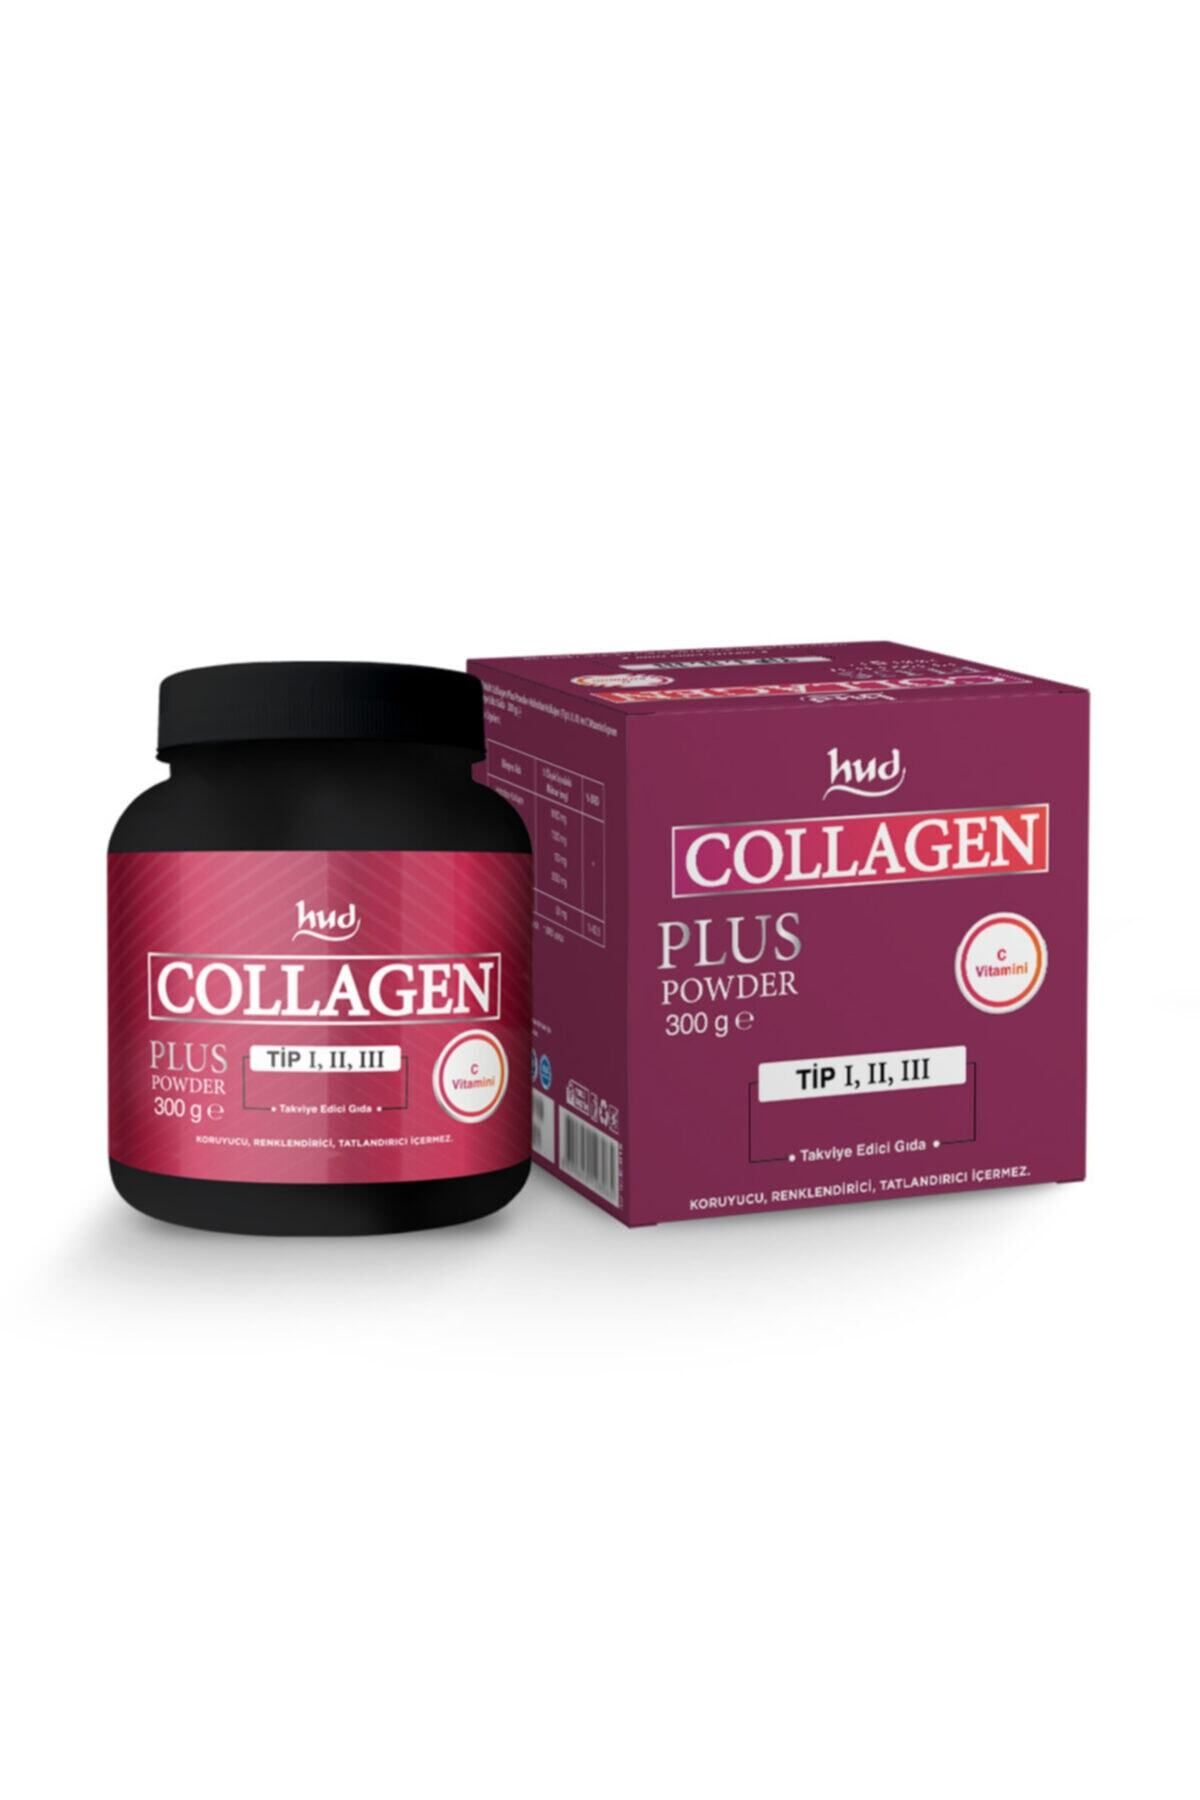 Hud Collagen Plus Powder 300 gr Tip 1 - Tip 2 - Tip 3 Toz Kolajen